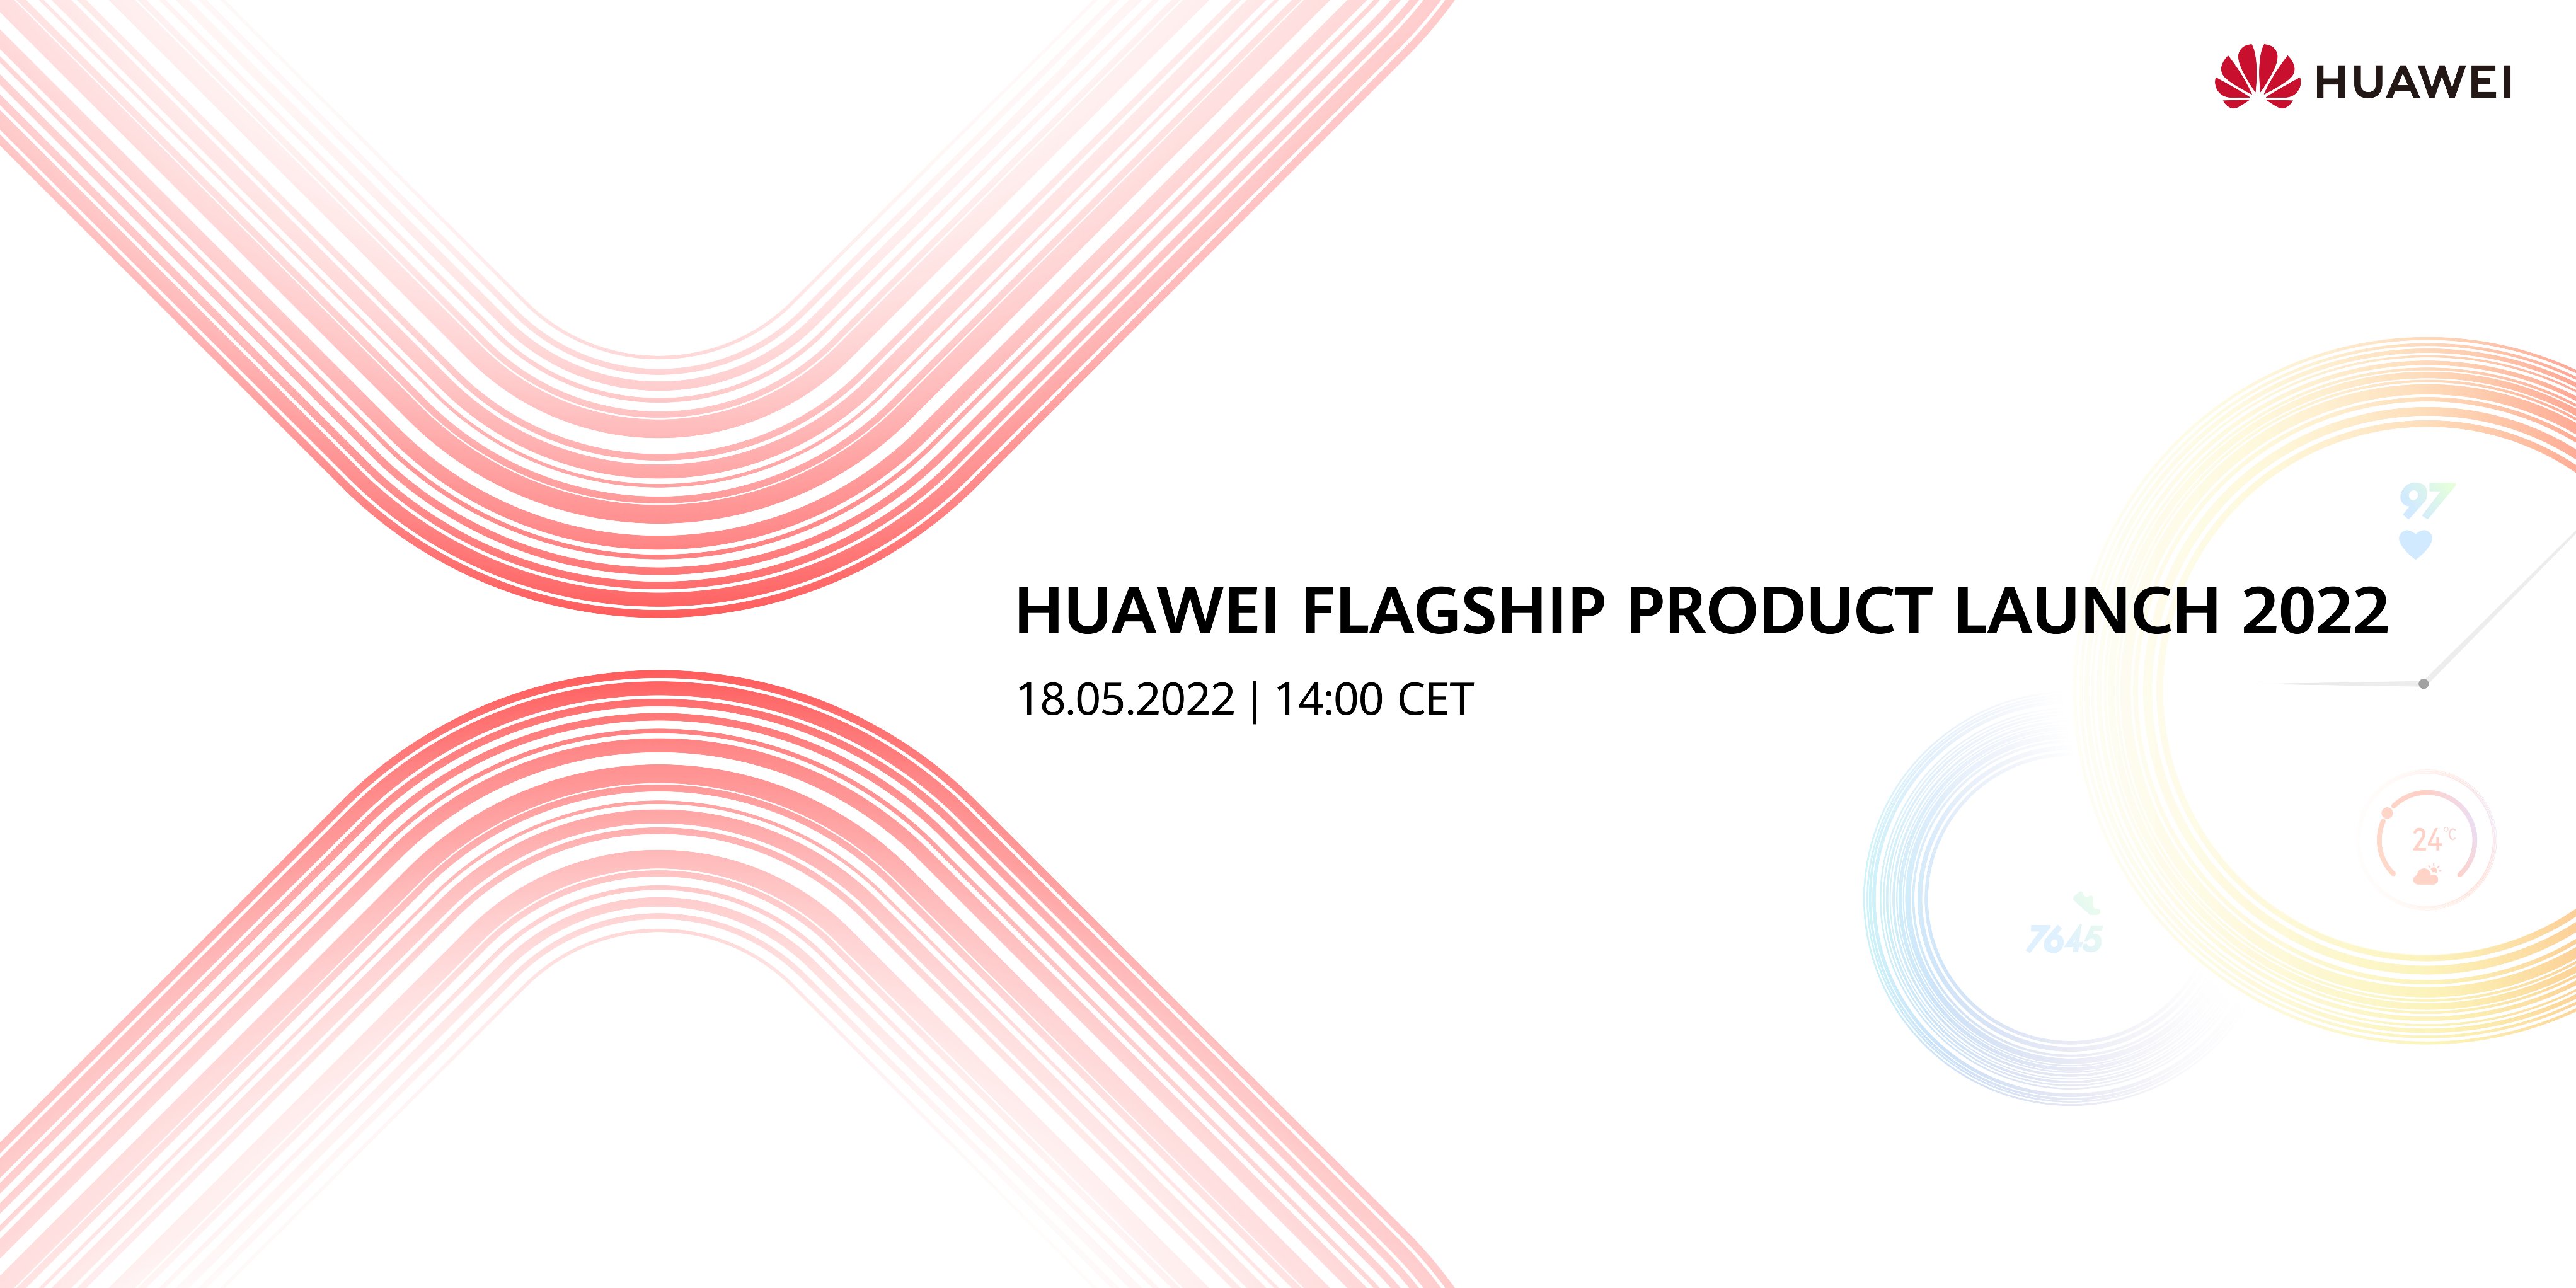 Huawei ogłosił globalną prezentację 18 maja: czekamy na składany smartfon Mate Xs 2 i inne nowości firmy